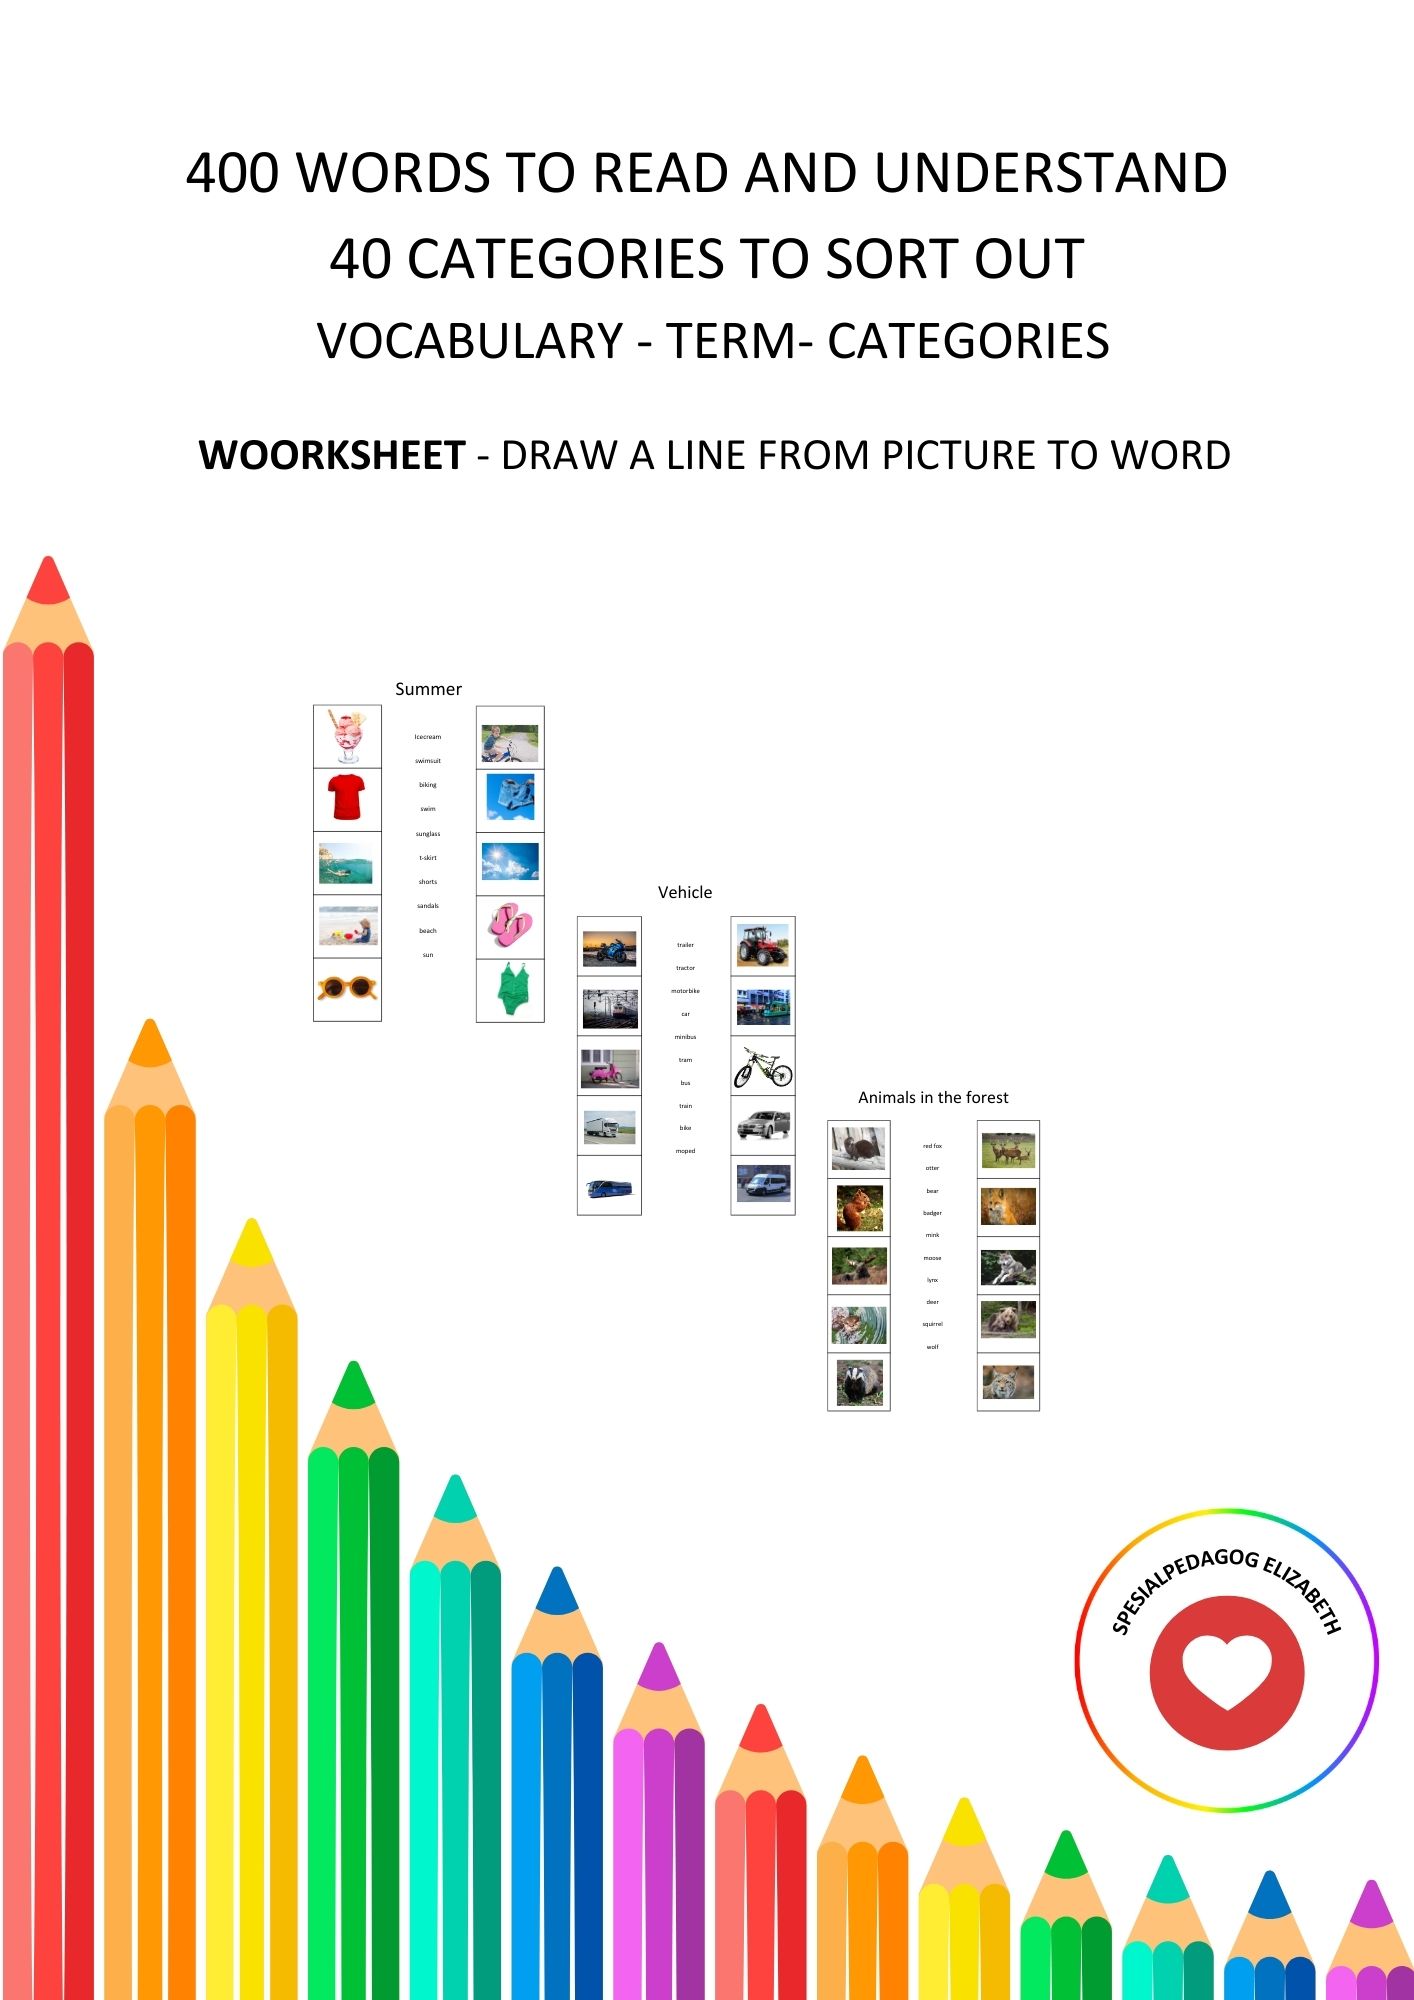 400 engelske ord å lese og forstå, 40 kategorier, arbeidsark for ordforråd, kategorisering og begrep